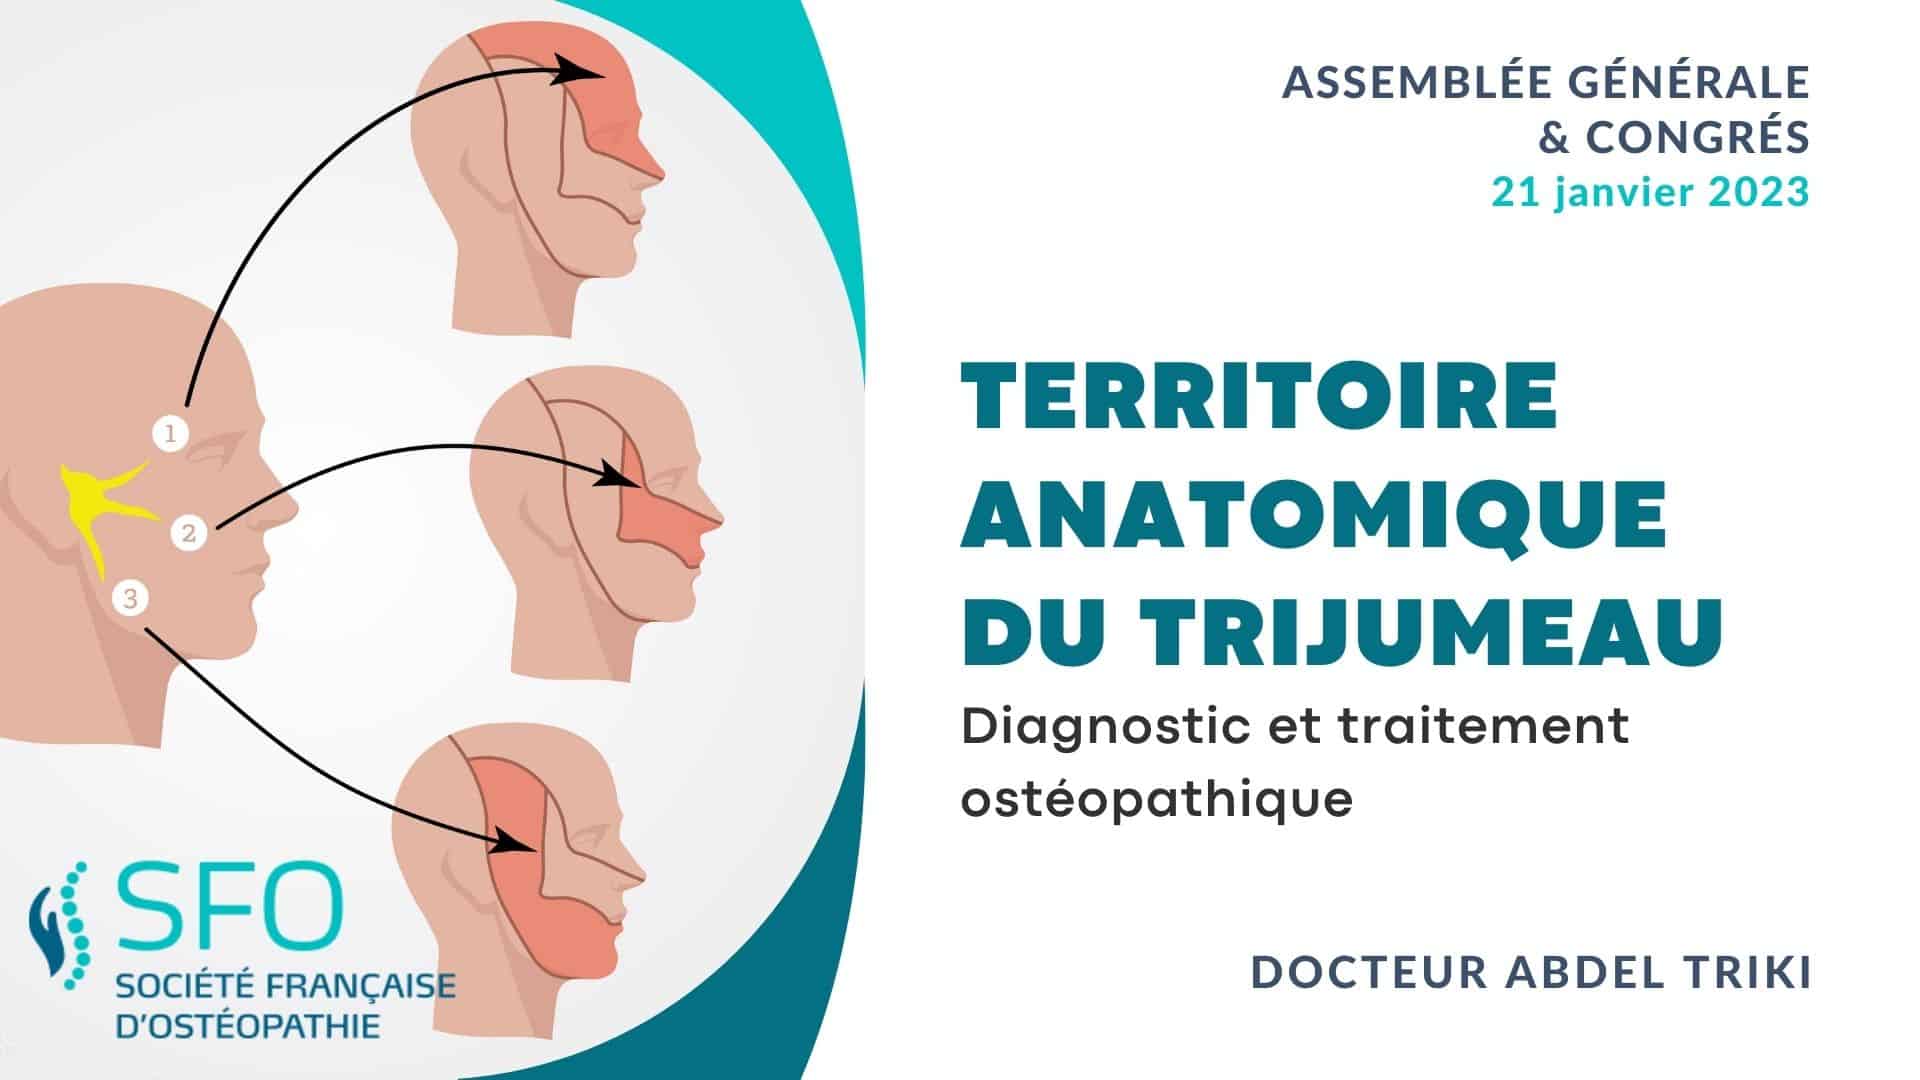 Diagnostic et traitement ostéopathique à partir du territoire anatomique du trijumeau présenté par le Dr Abdel TRIKI congrès SFO 2023